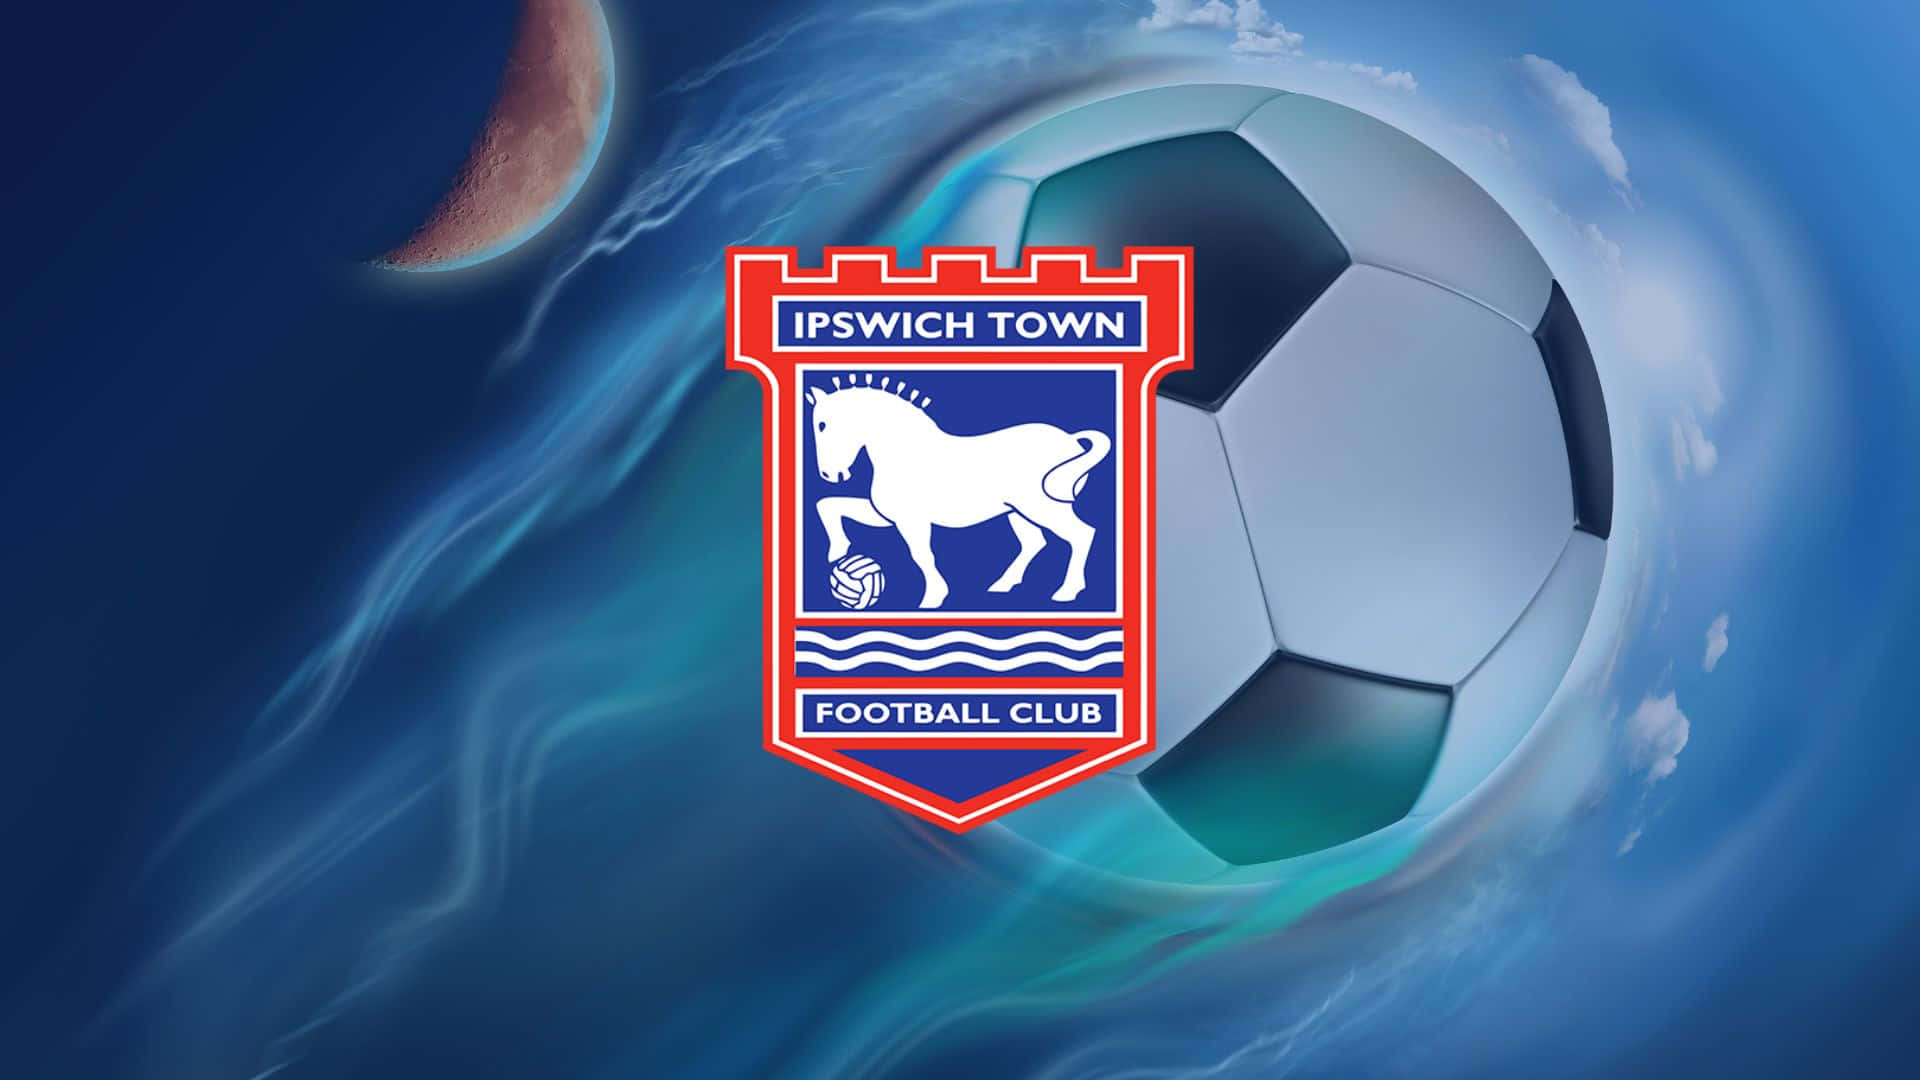 Ipswichtown Football Club En Acción. Fondo de pantalla